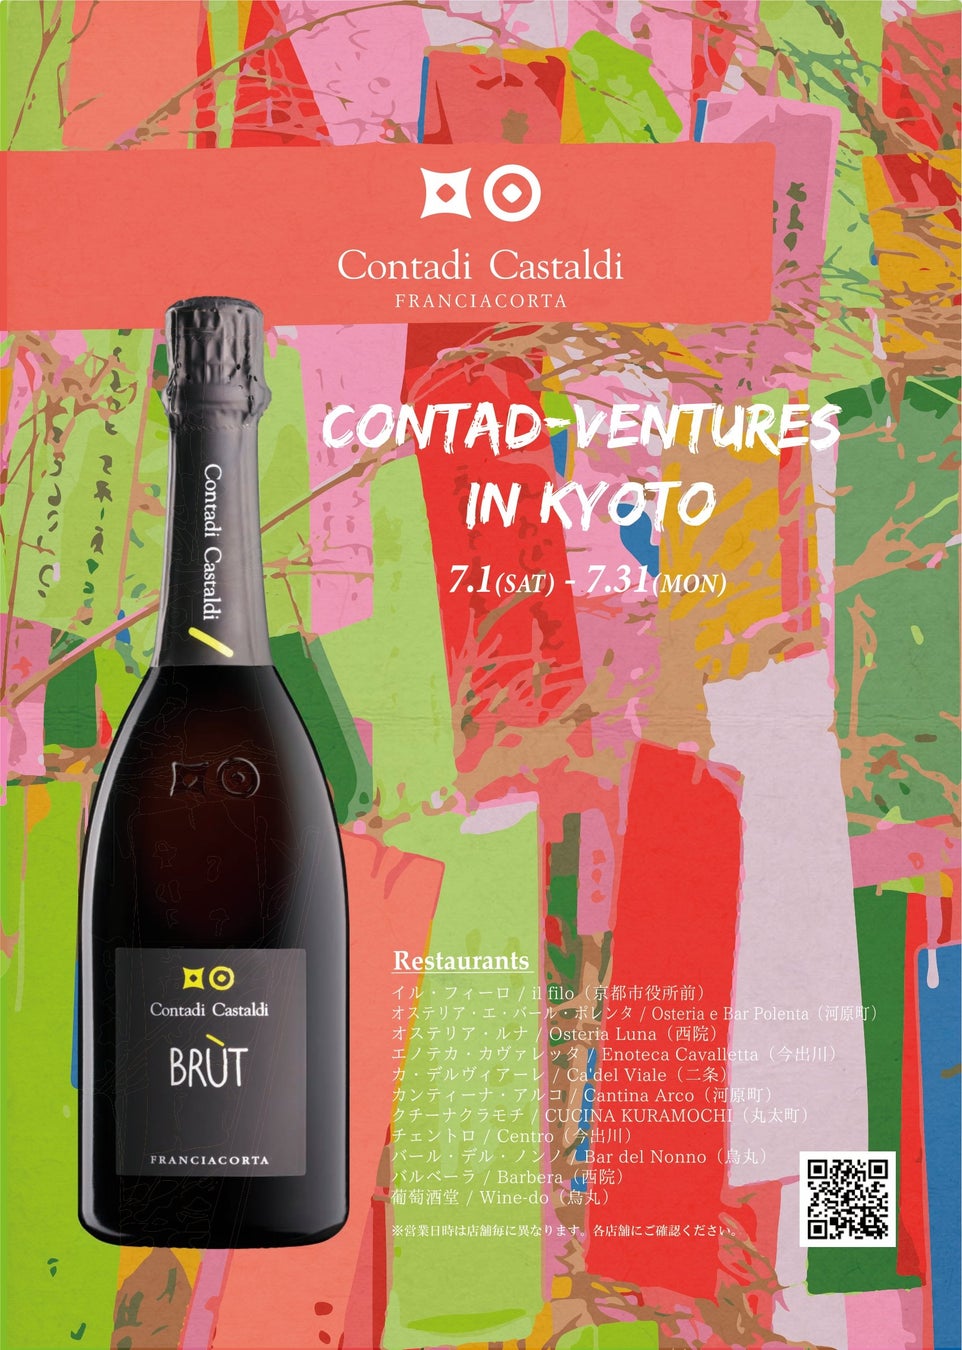 イタリア高品質発泡ワイン フランチャコルタ「コンタディ・カスタルディ」を味わう『Contad-Ventures in Kyoto（コンタドベンチャー京都）』開催のお知らせ